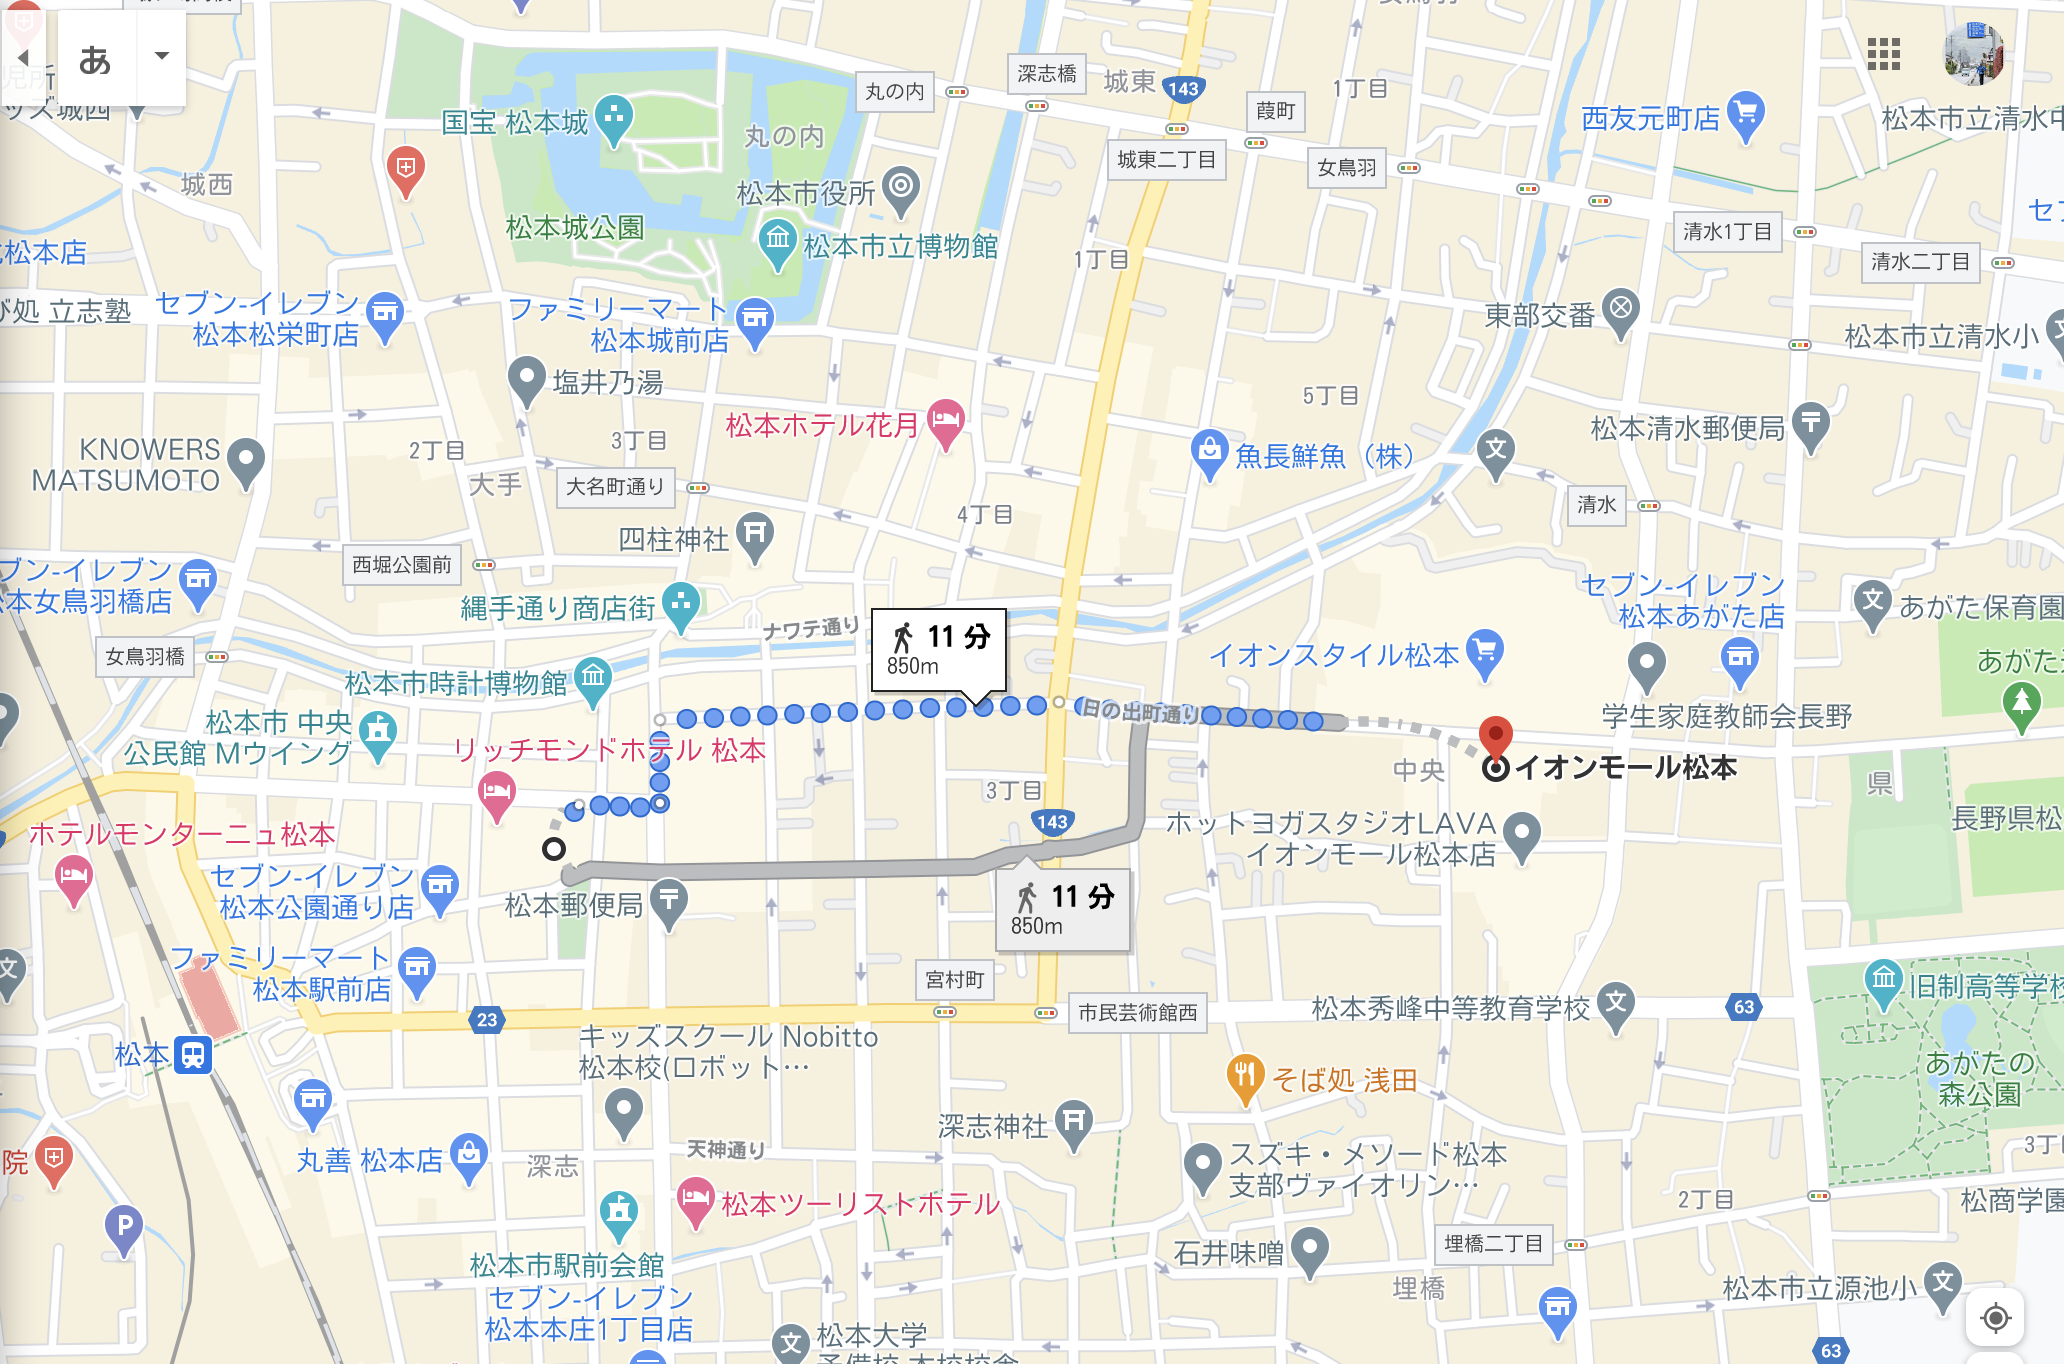 イオンモールからパルコへ 松本駅周辺の良い所全てを見学する Lhouse